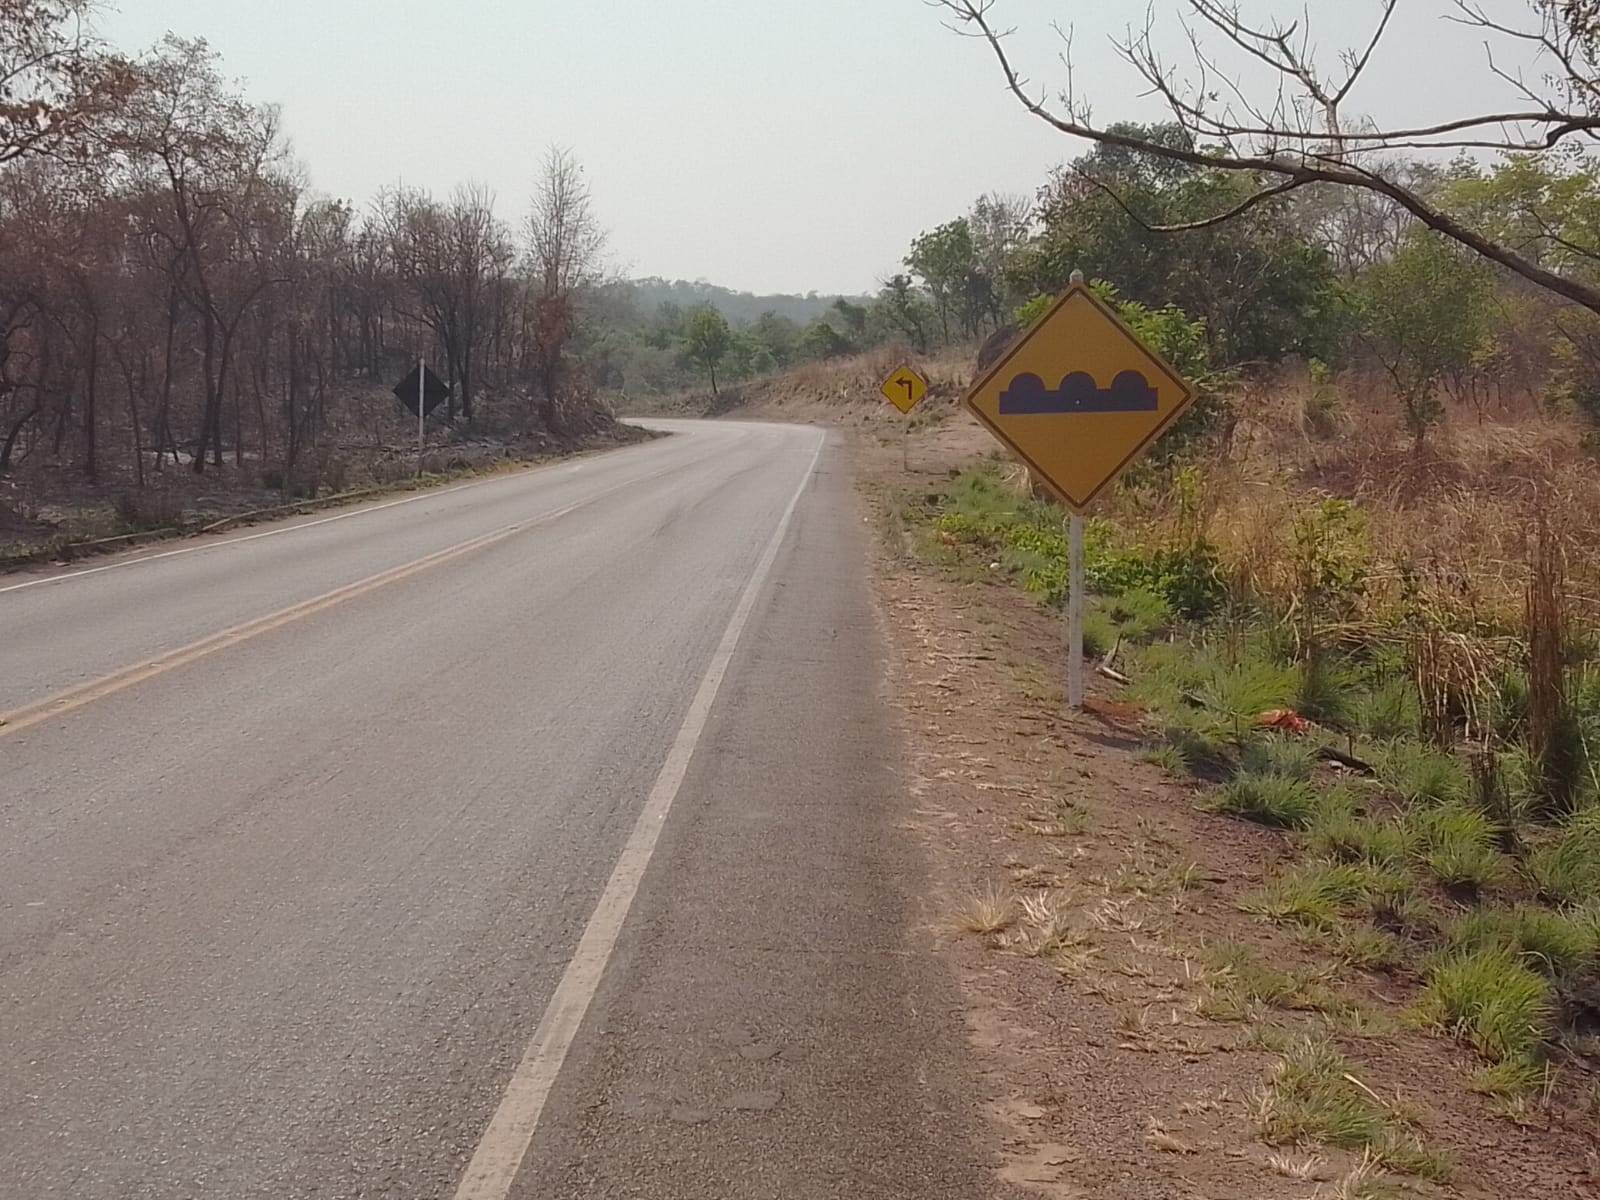 Governo do Tocantins reforça sinalização da TO-040 no ponto conhecido como “Descida do Aleixo”, em Dianópolis (TO)